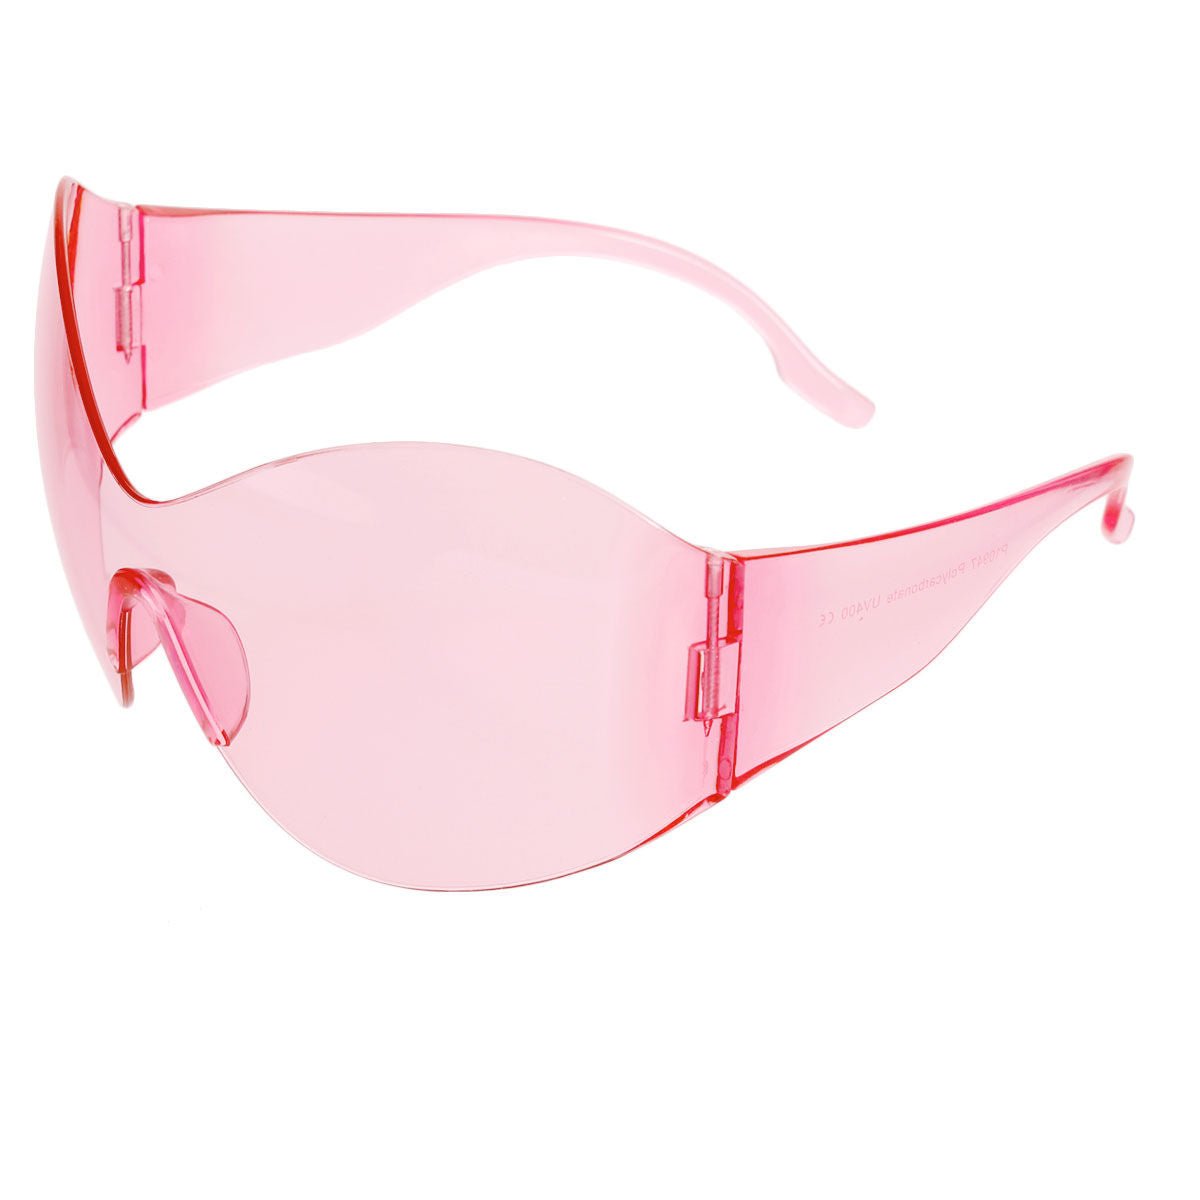 Sunglasses Butterfly Mask Pink Eyewear for Women - Bae Apparel